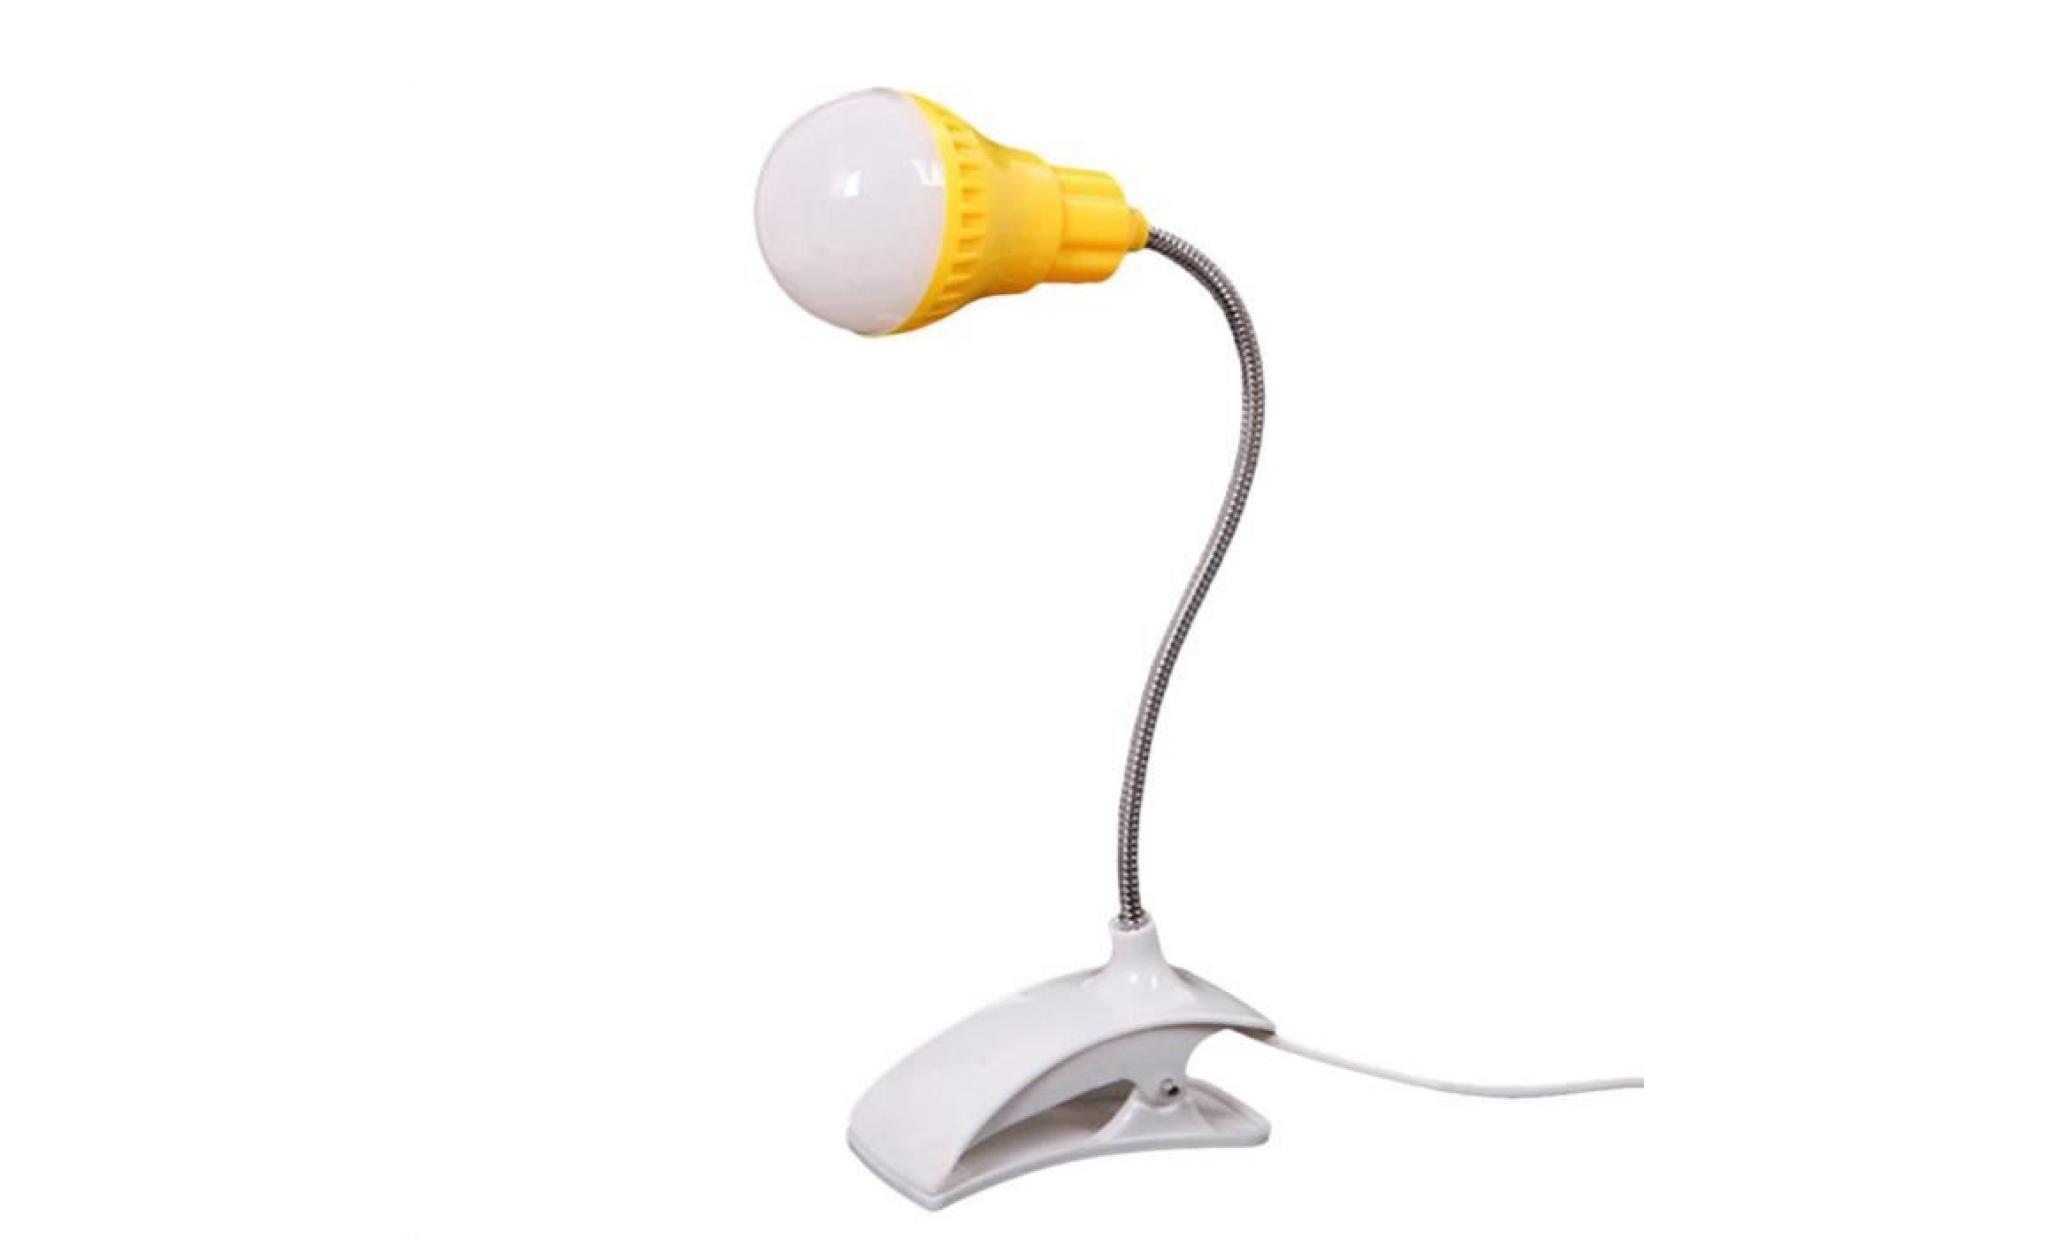 nouveau support de table lampe usb du personnel étudiant de lecture table bureau lampe gn @qw1893 pas cher